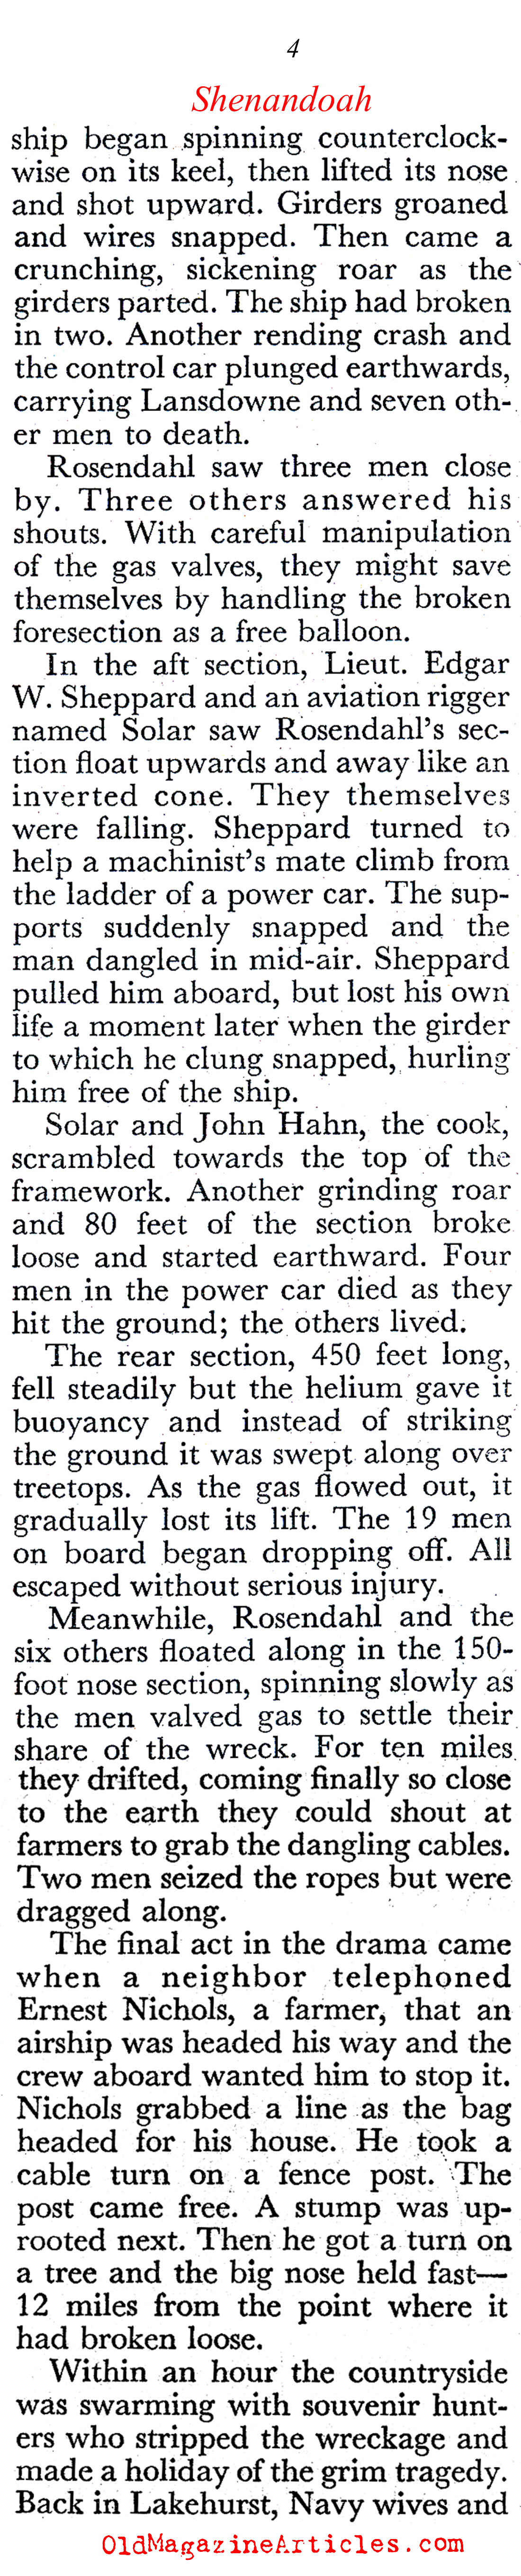 The Destruction of the <i>Shenandoah</i> (Coronet Magazine, 1949)